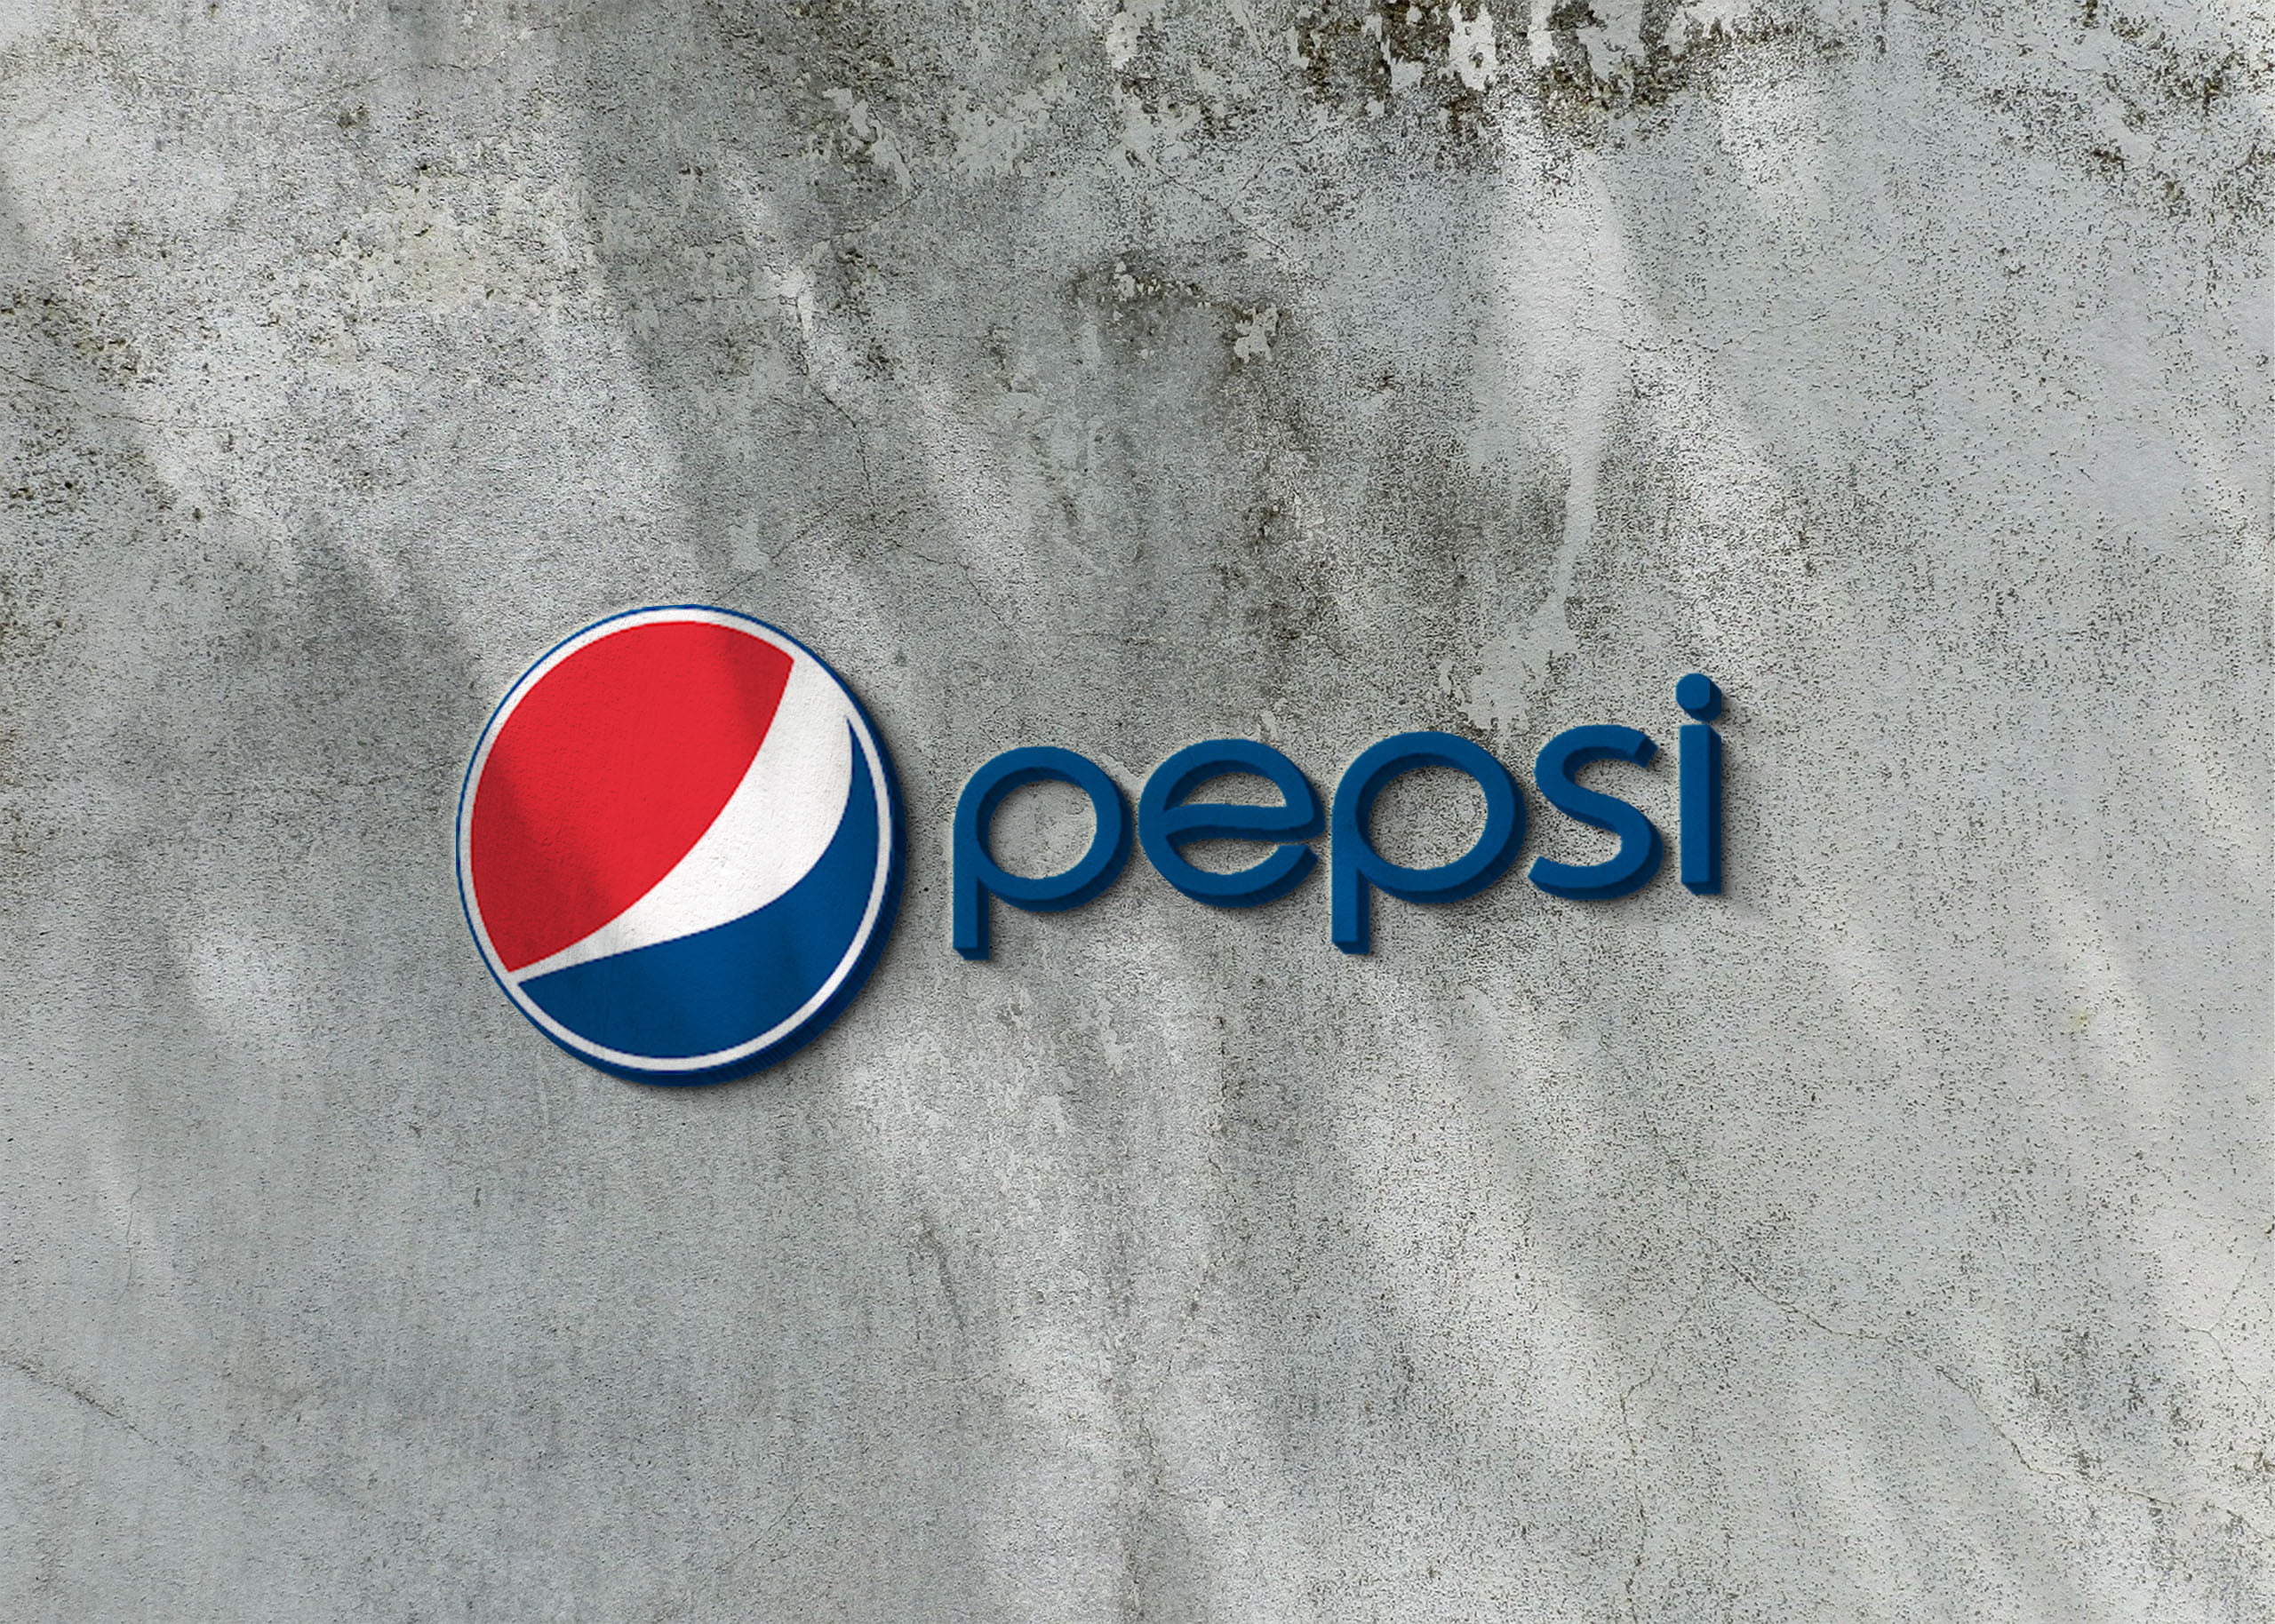 Pepsi logo on 3d wall